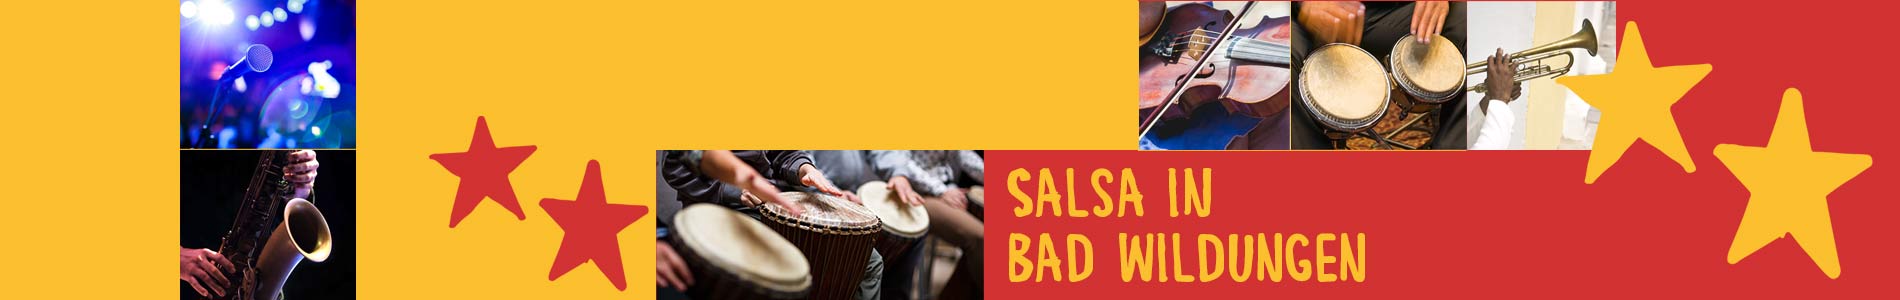 Salsa in Bad Wildungen – Salsa lernen und tanzen, Tanzkurse, Partys, Veranstaltungen